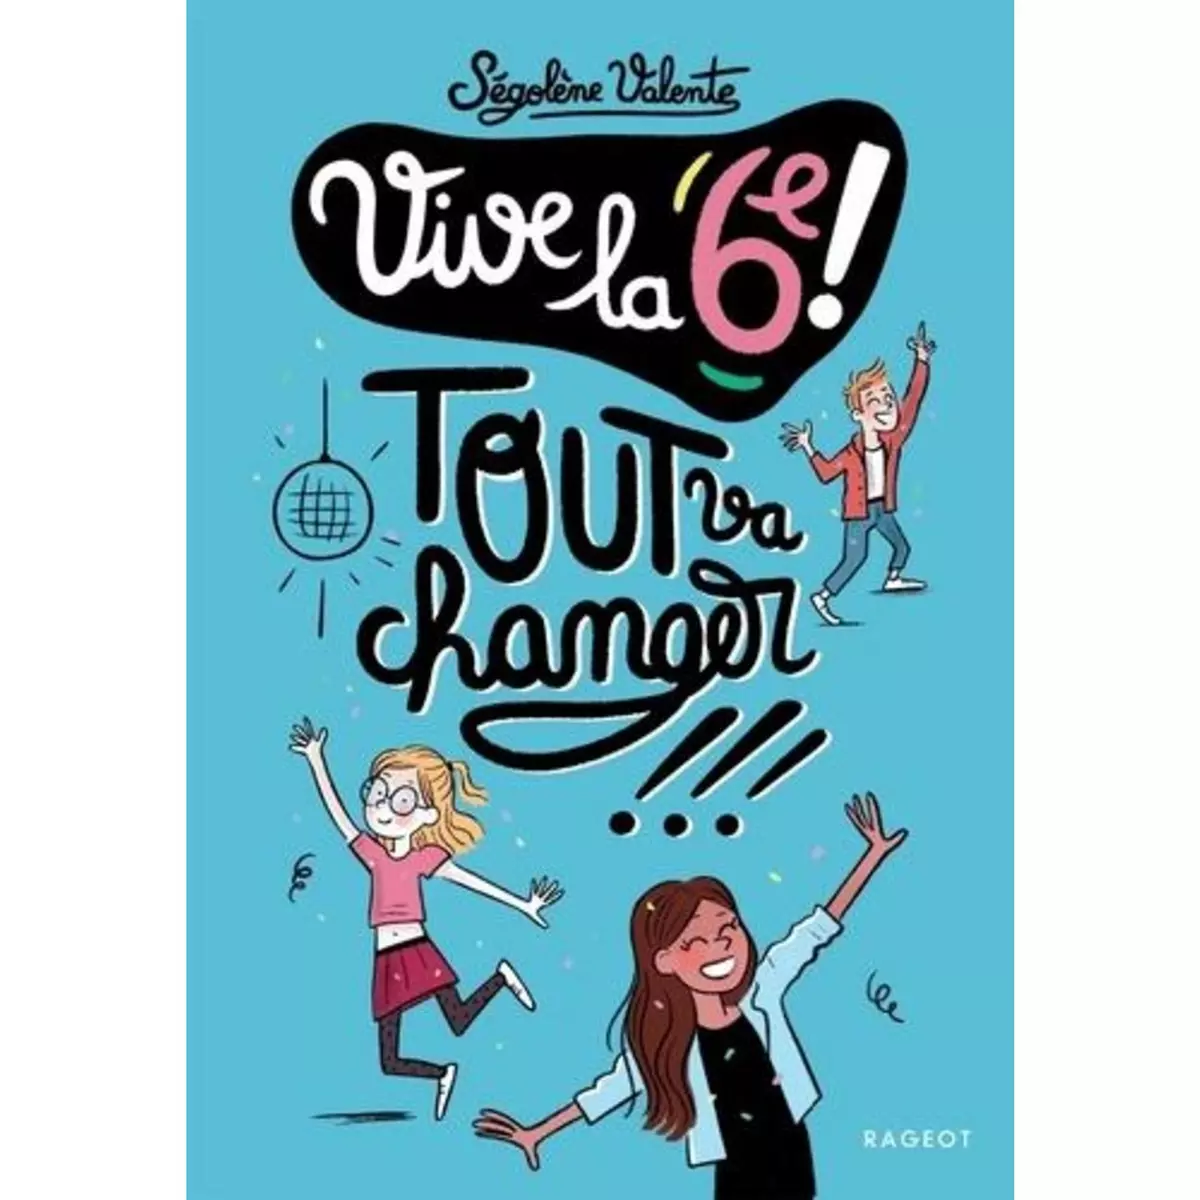  VIVE LA 6E ! : TOUT VA CHANGER !, Valente Ségolène